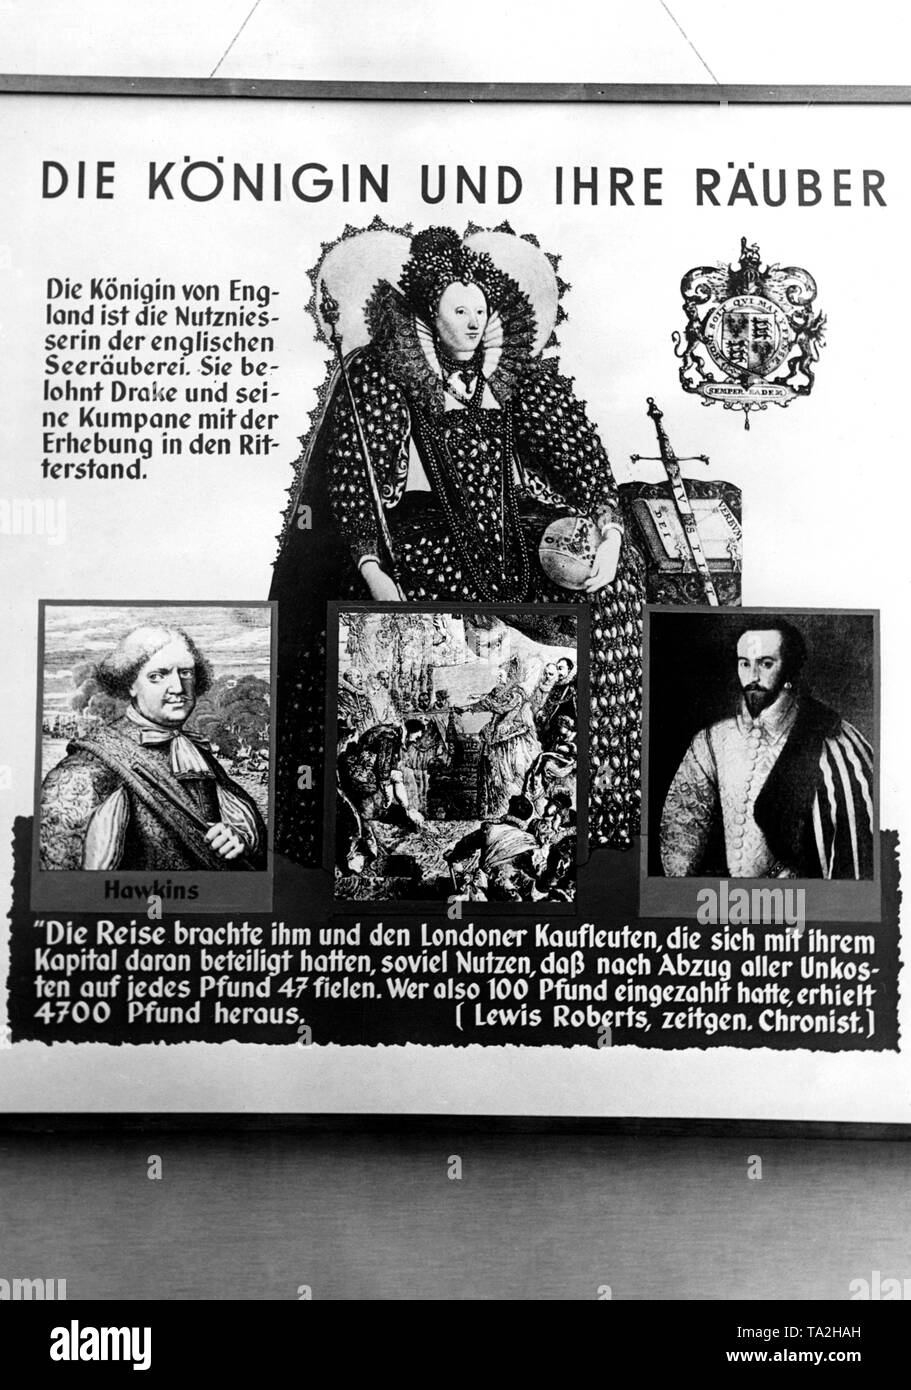 Cette pièce de propagande anti-britannique de l'exposition 'Raubstaat Angleterre' a été l'intention de diffamer les Britanniques à travers leur histoire de tactique controversée dans le traitement de la piraterie. L'affiche avec le titre "La Reine et ses brigands' fait référence à la reine Elisabeth en tant que bénéficiaire de l'freebootery. Banque D'Images